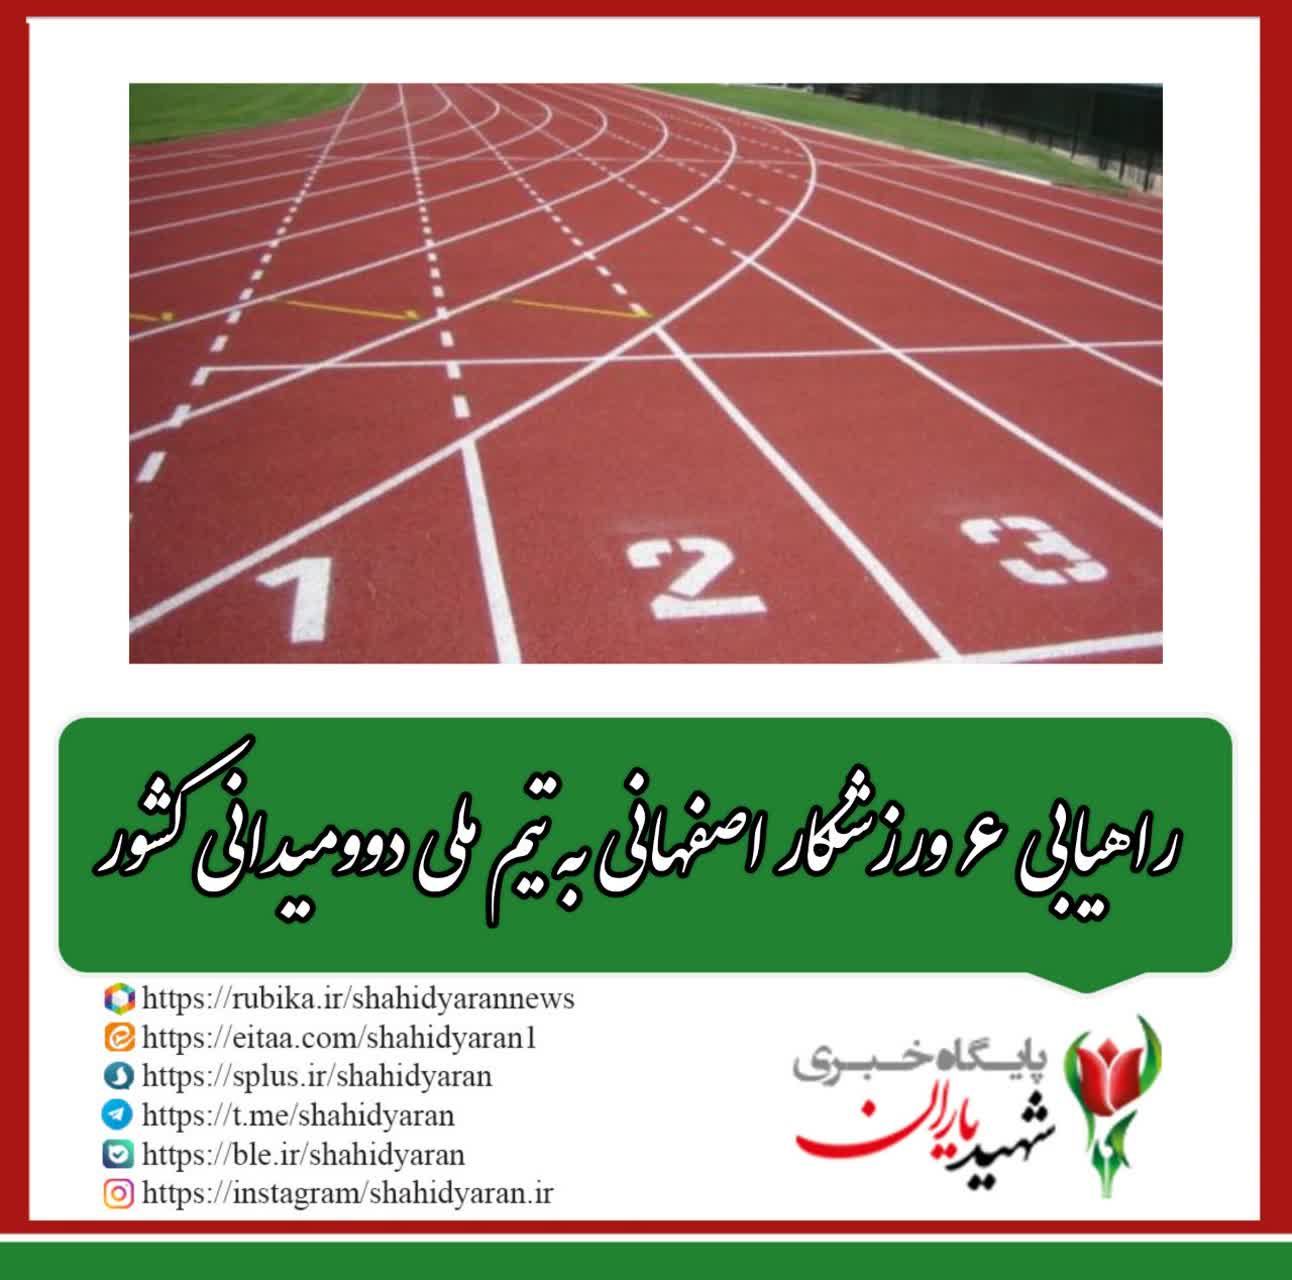 روابط عمومی اداره کل ورزش و جوانان استان اصفهان خبر داد؛